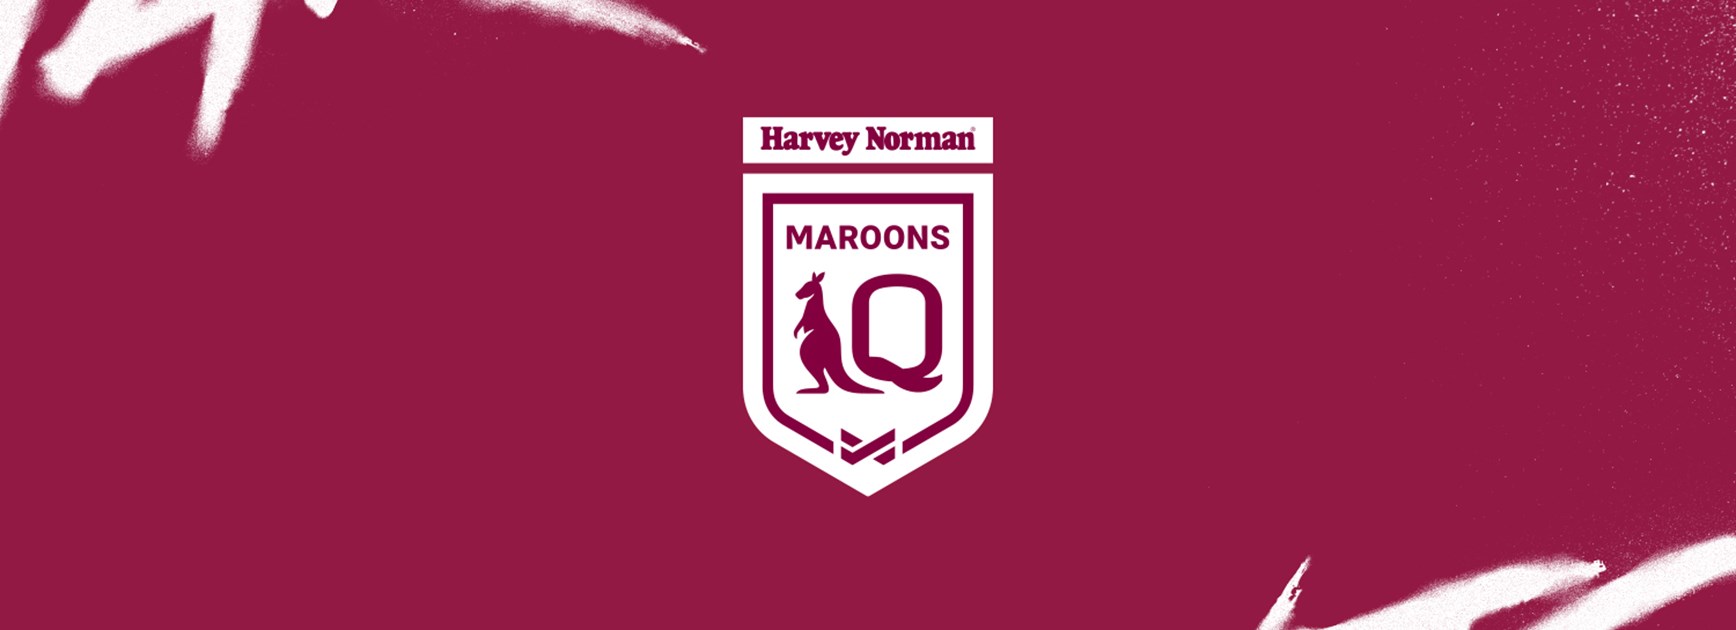 Harvey Norman Queensland Maroons Game II squad